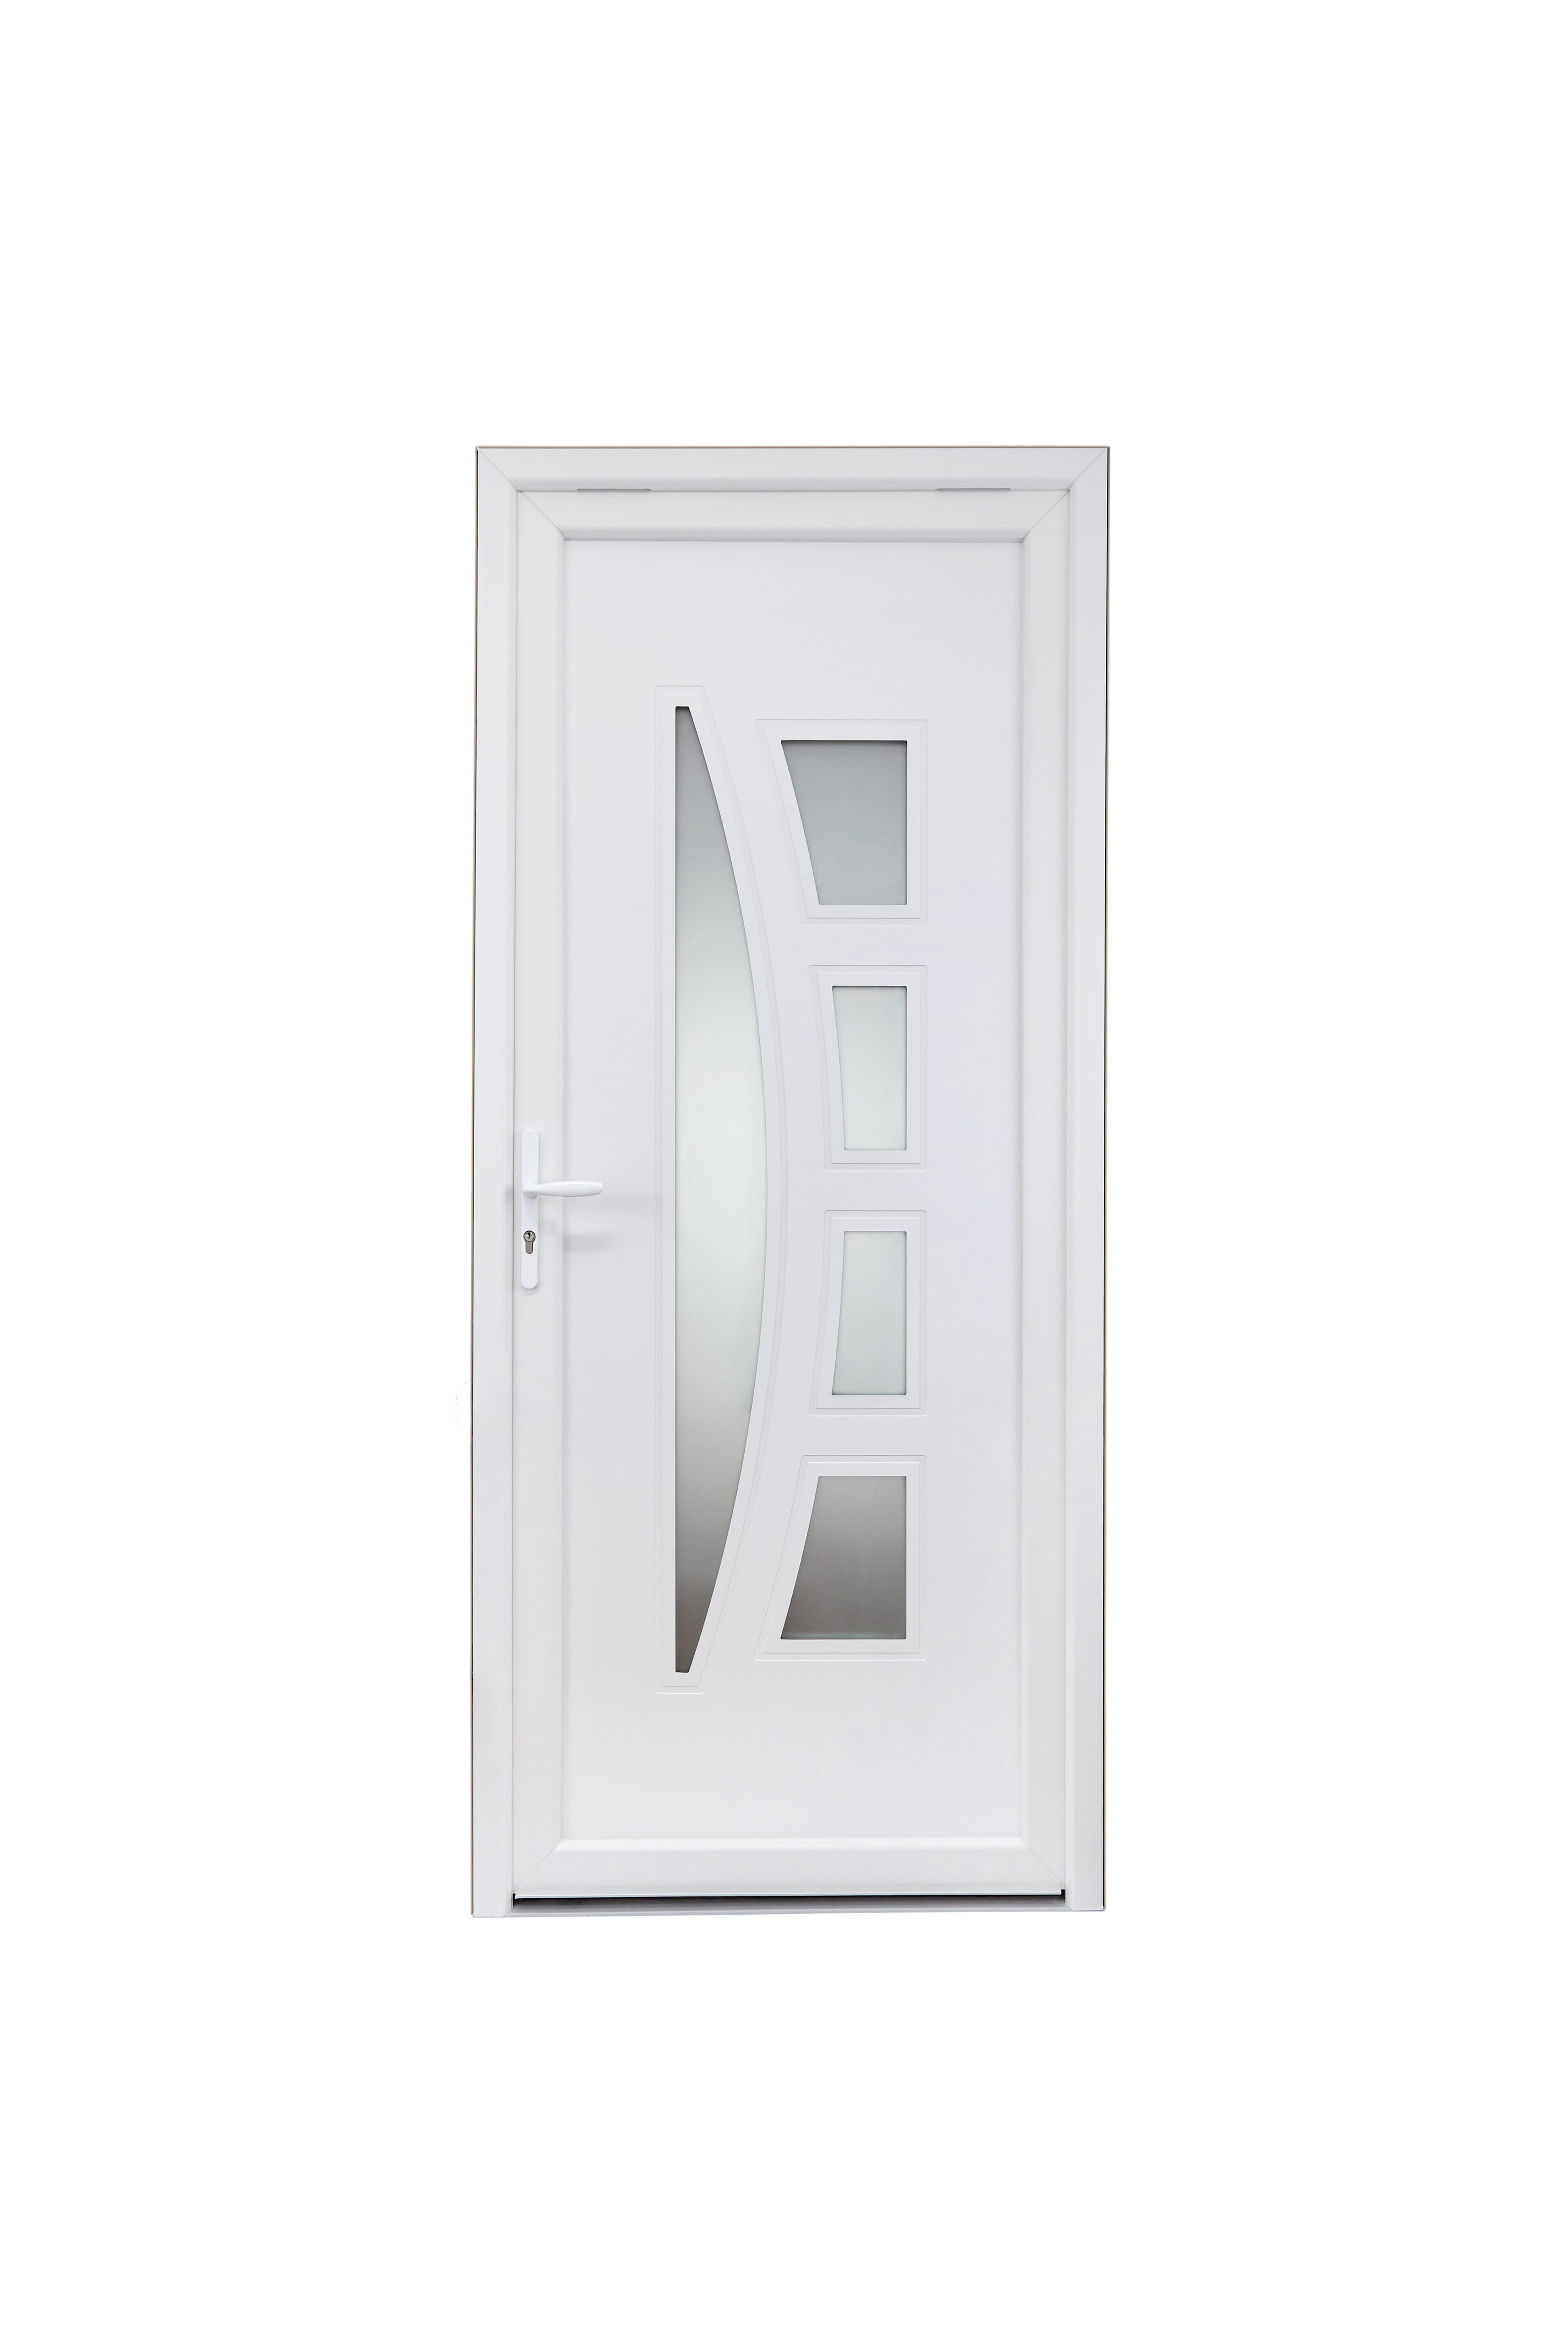 Porte d'entrée PVC Riwa Essentiel H.215 x l.90 cm vitrée blanc ...